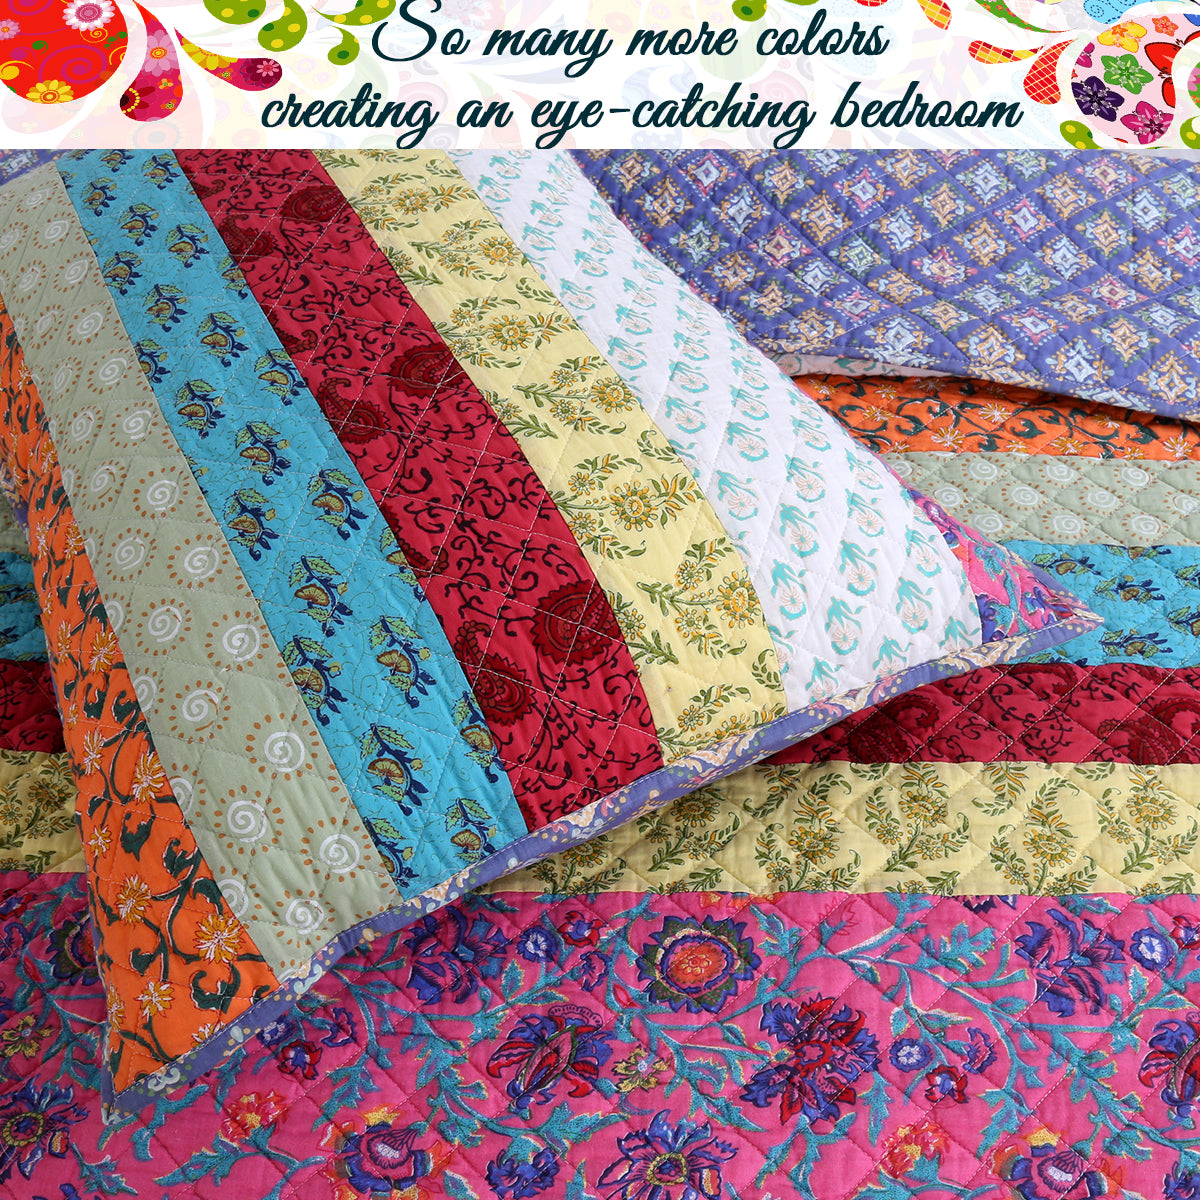 Vibrant Stripe Real Patchwork 3-Piece Cotton Reversible Quilt Bedding Set